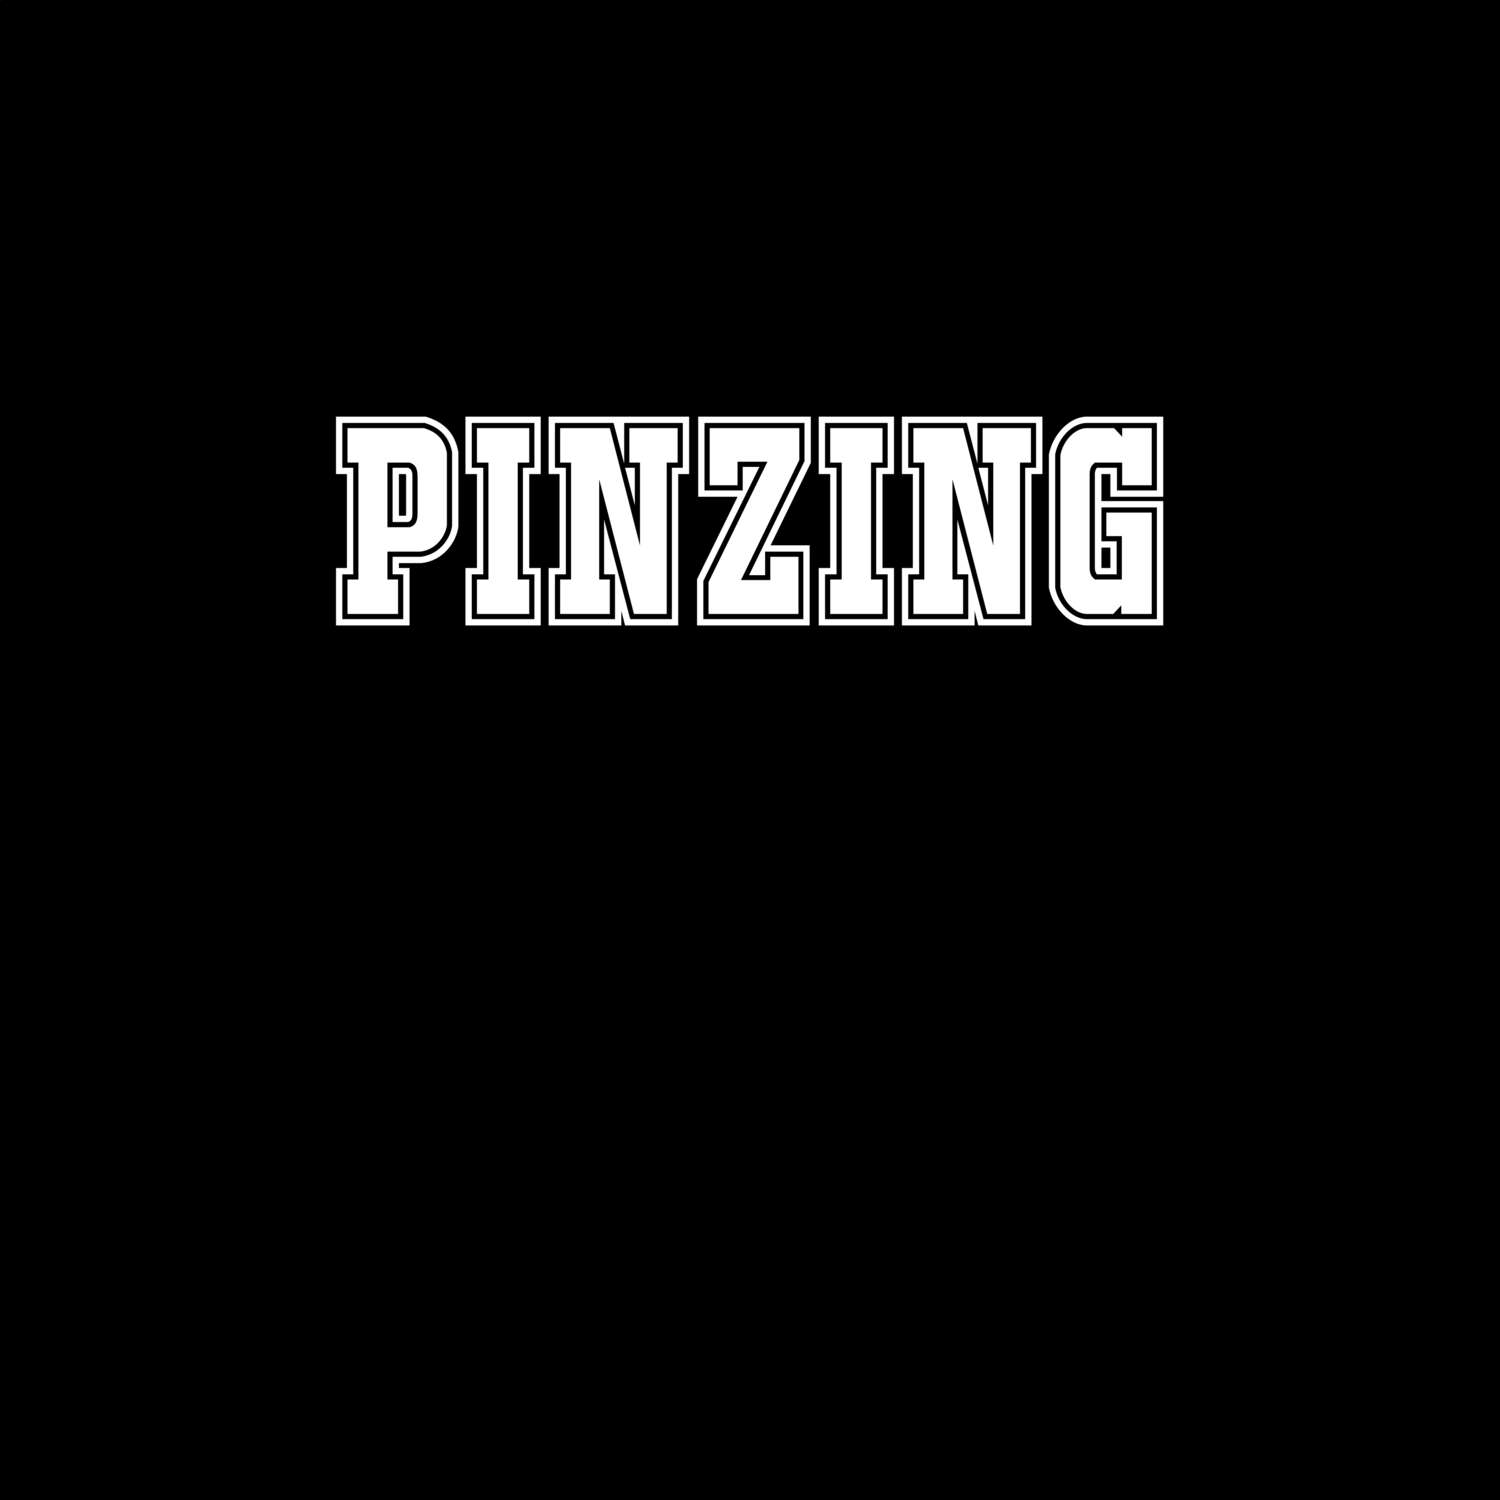 Pinzing T-Shirt »Classic«